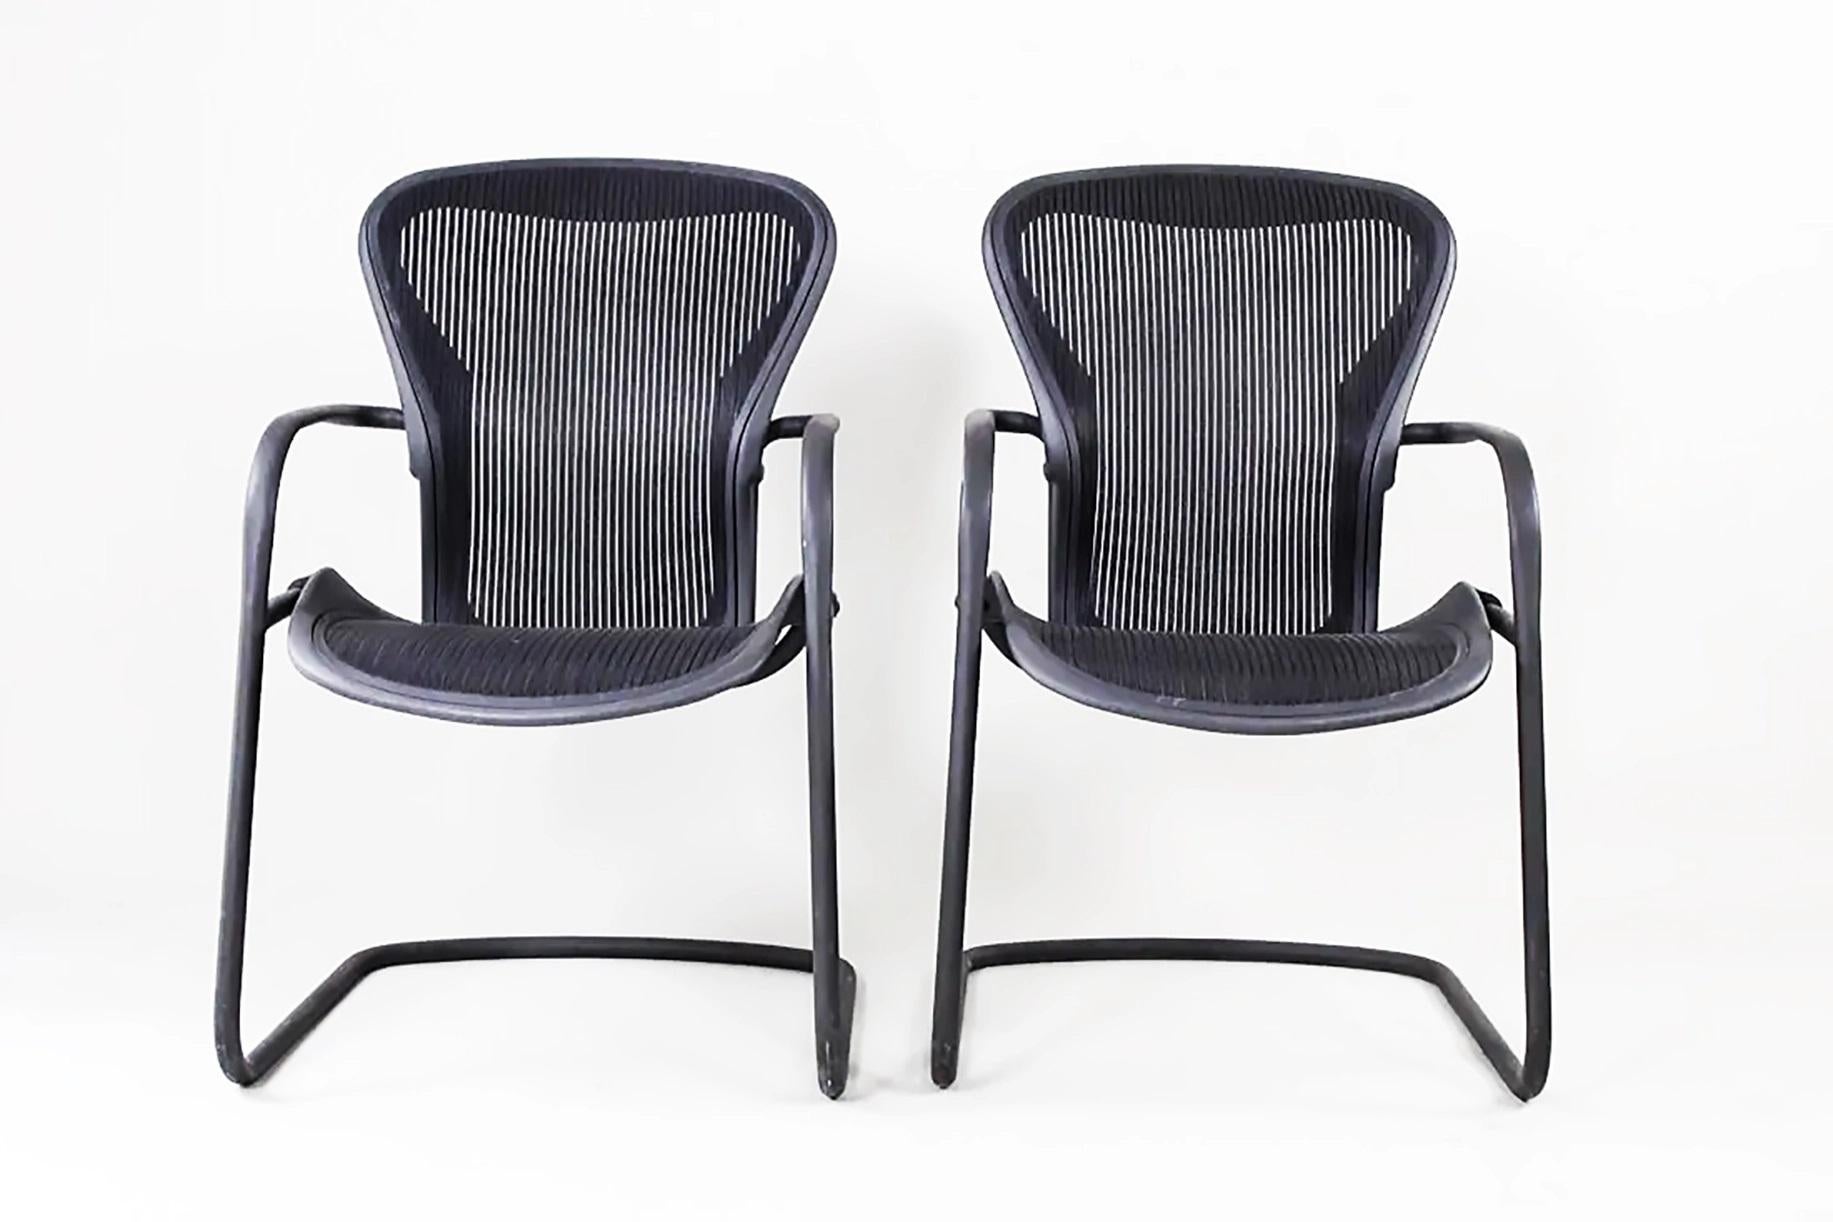 Chaises d'appoint ergonomiques Aeron de Herman Miller  Cadres et grilles en métal tubulaire noir 

Nous proposons à la vente une paire de chaises ergonomiques Herman Miller 